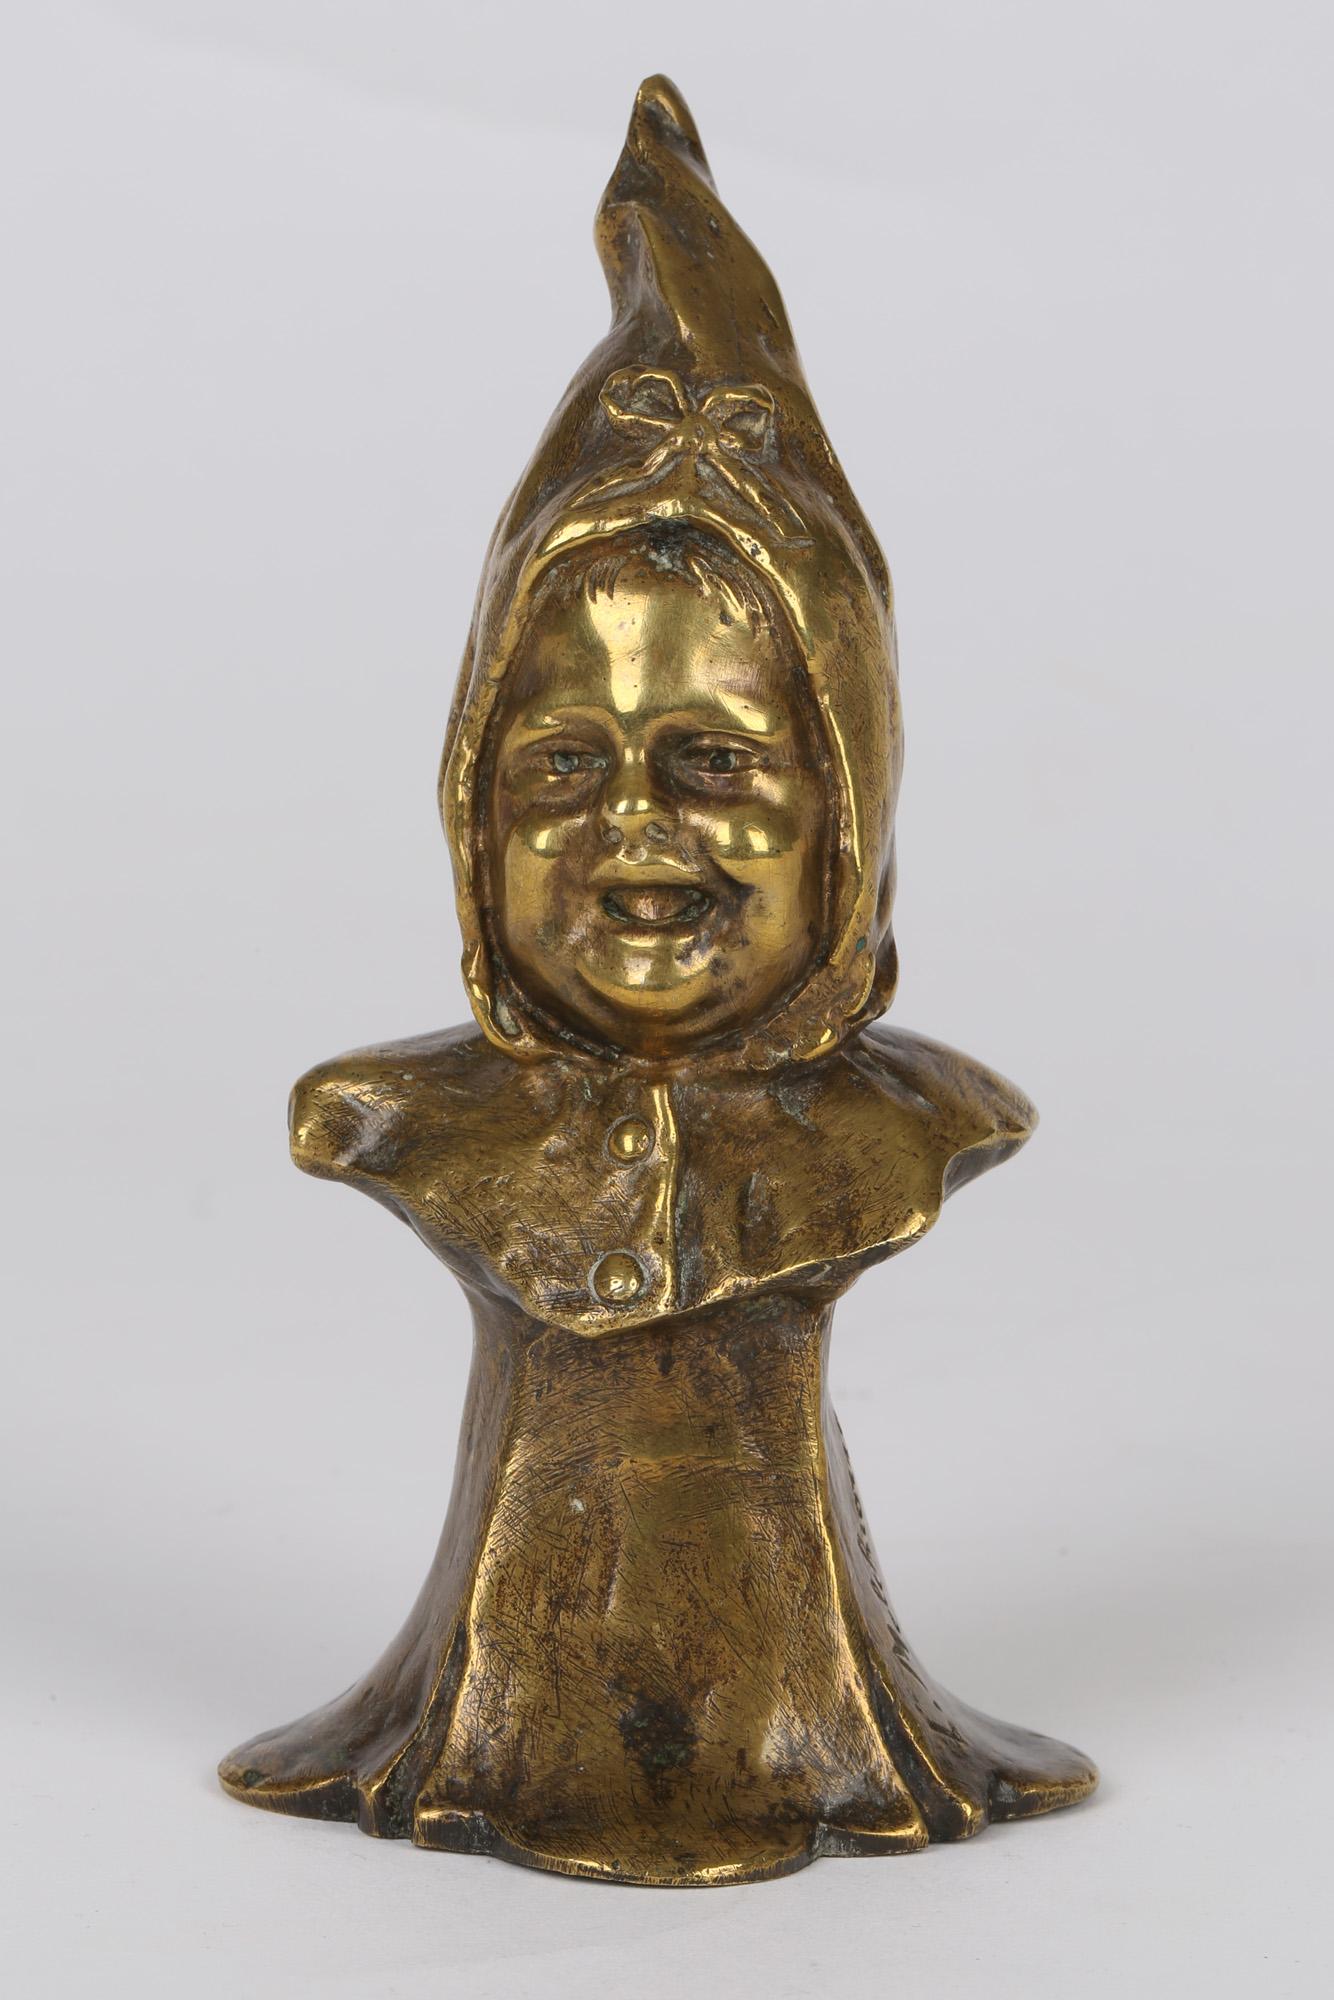 Un beau buste italien ancien en bronze doré d'un jeune enfant portant un bonnet signé par Luigi Melchiorre (1859-c.1908). Le buste repose sur un piédestal intégral drapé et représente une tête bien détaillée d'un jeune enfant portant un col boutonné